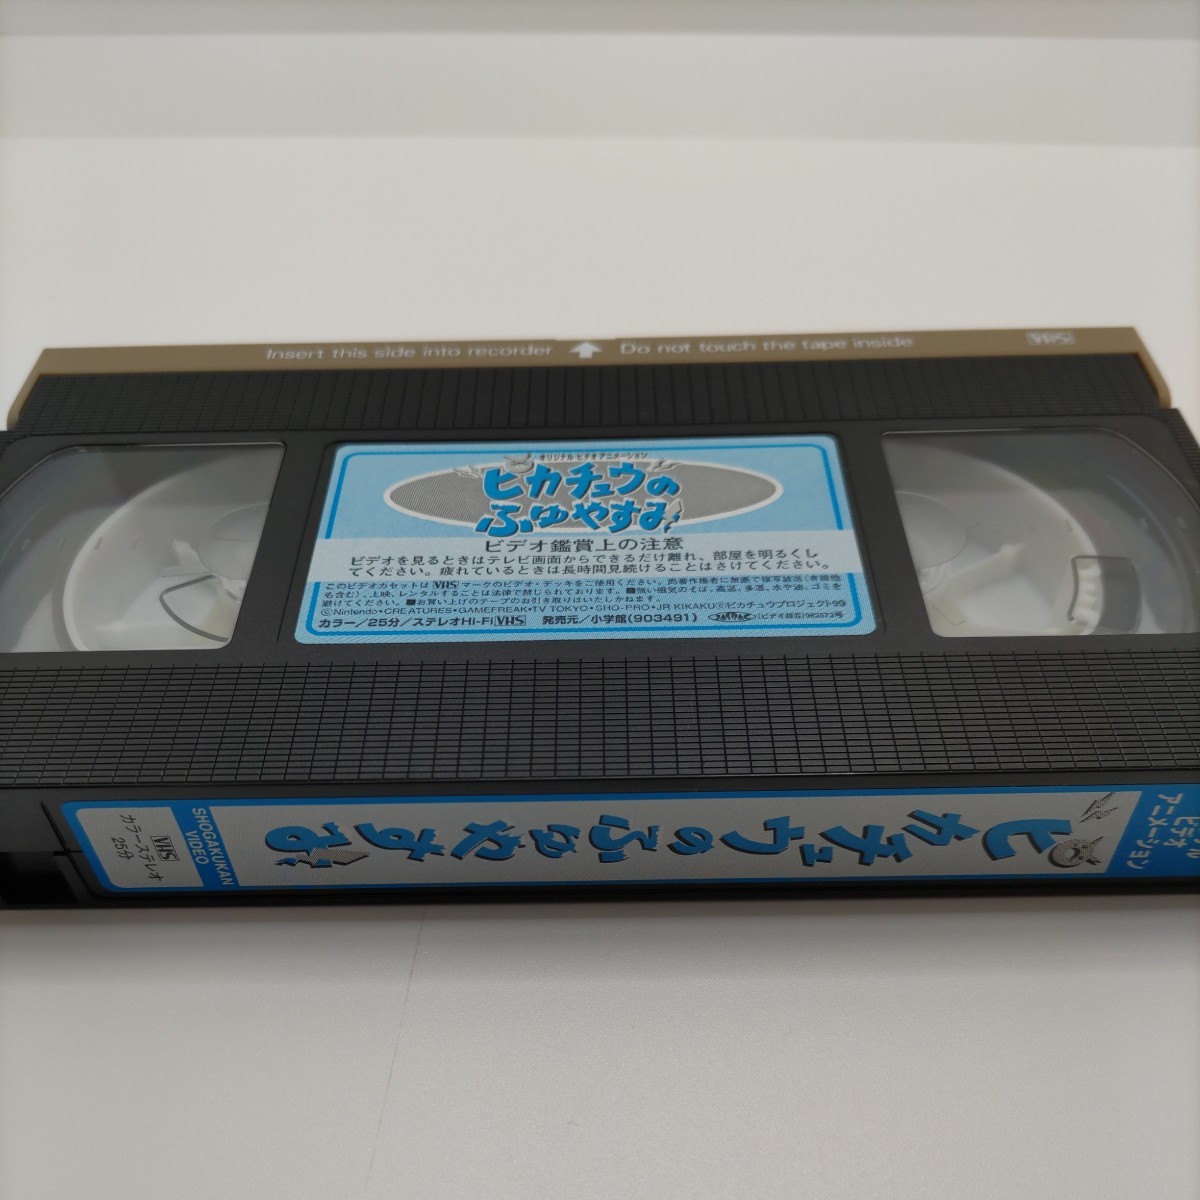  【貴重なポケモンのVHS!】ポケットモンスター ピカチュウのふゆやすみ VHS ビデオテープ